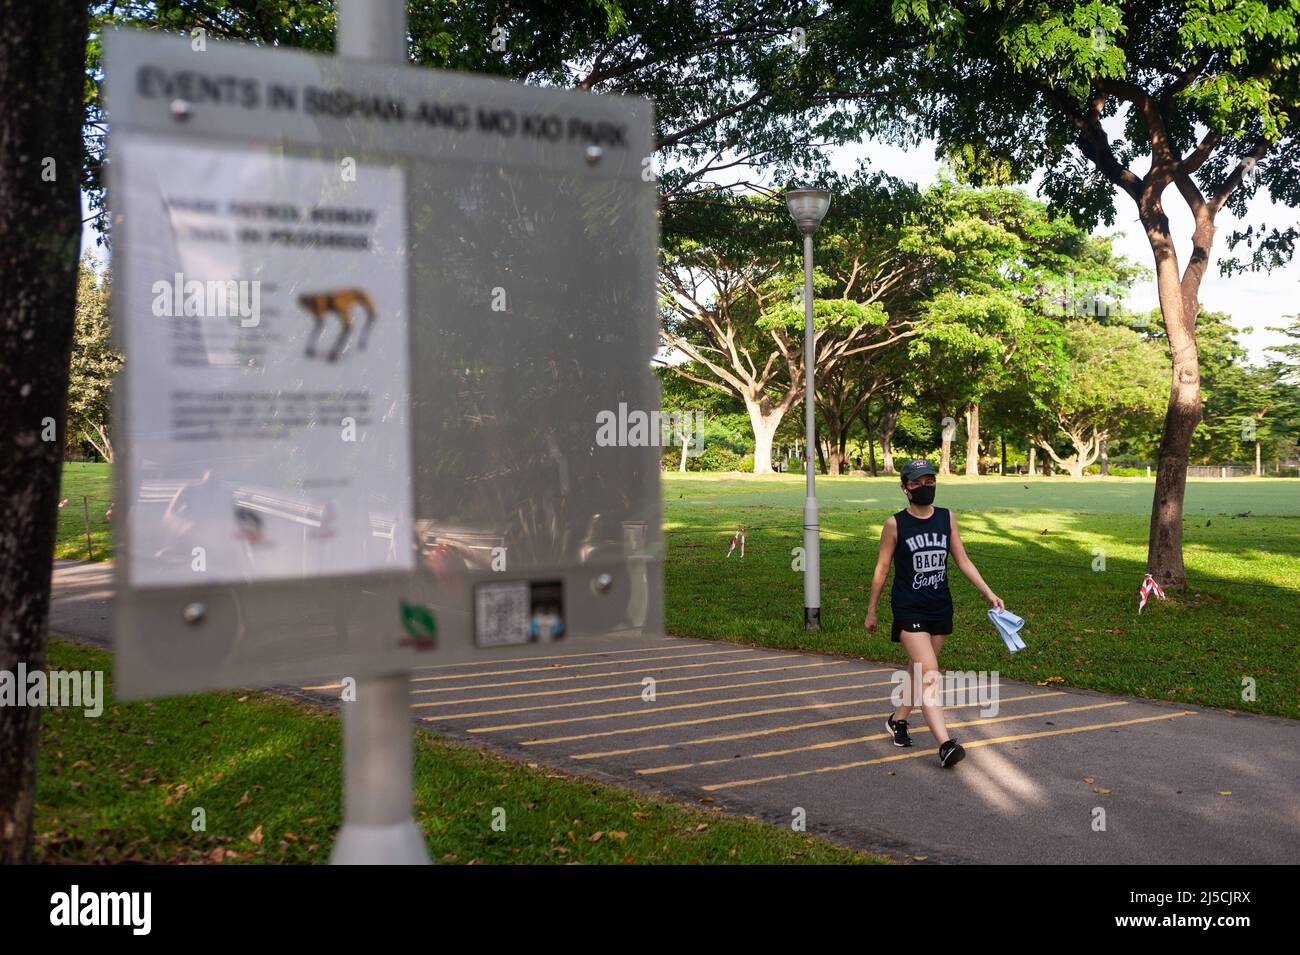 Le 15 mai 2020, Singapour, République de Singapour, Asie - Une femme portant un protège-bouche passe devant un panneau dans le parc Bishan-Ang Mo Kio pour informer du déploiement d'une patrouille robotique à des fins d'étude dans le cadre de mesures de distance sûres au milieu de la crise de Corona (Covid-19). [traduction automatique] Banque D'Images